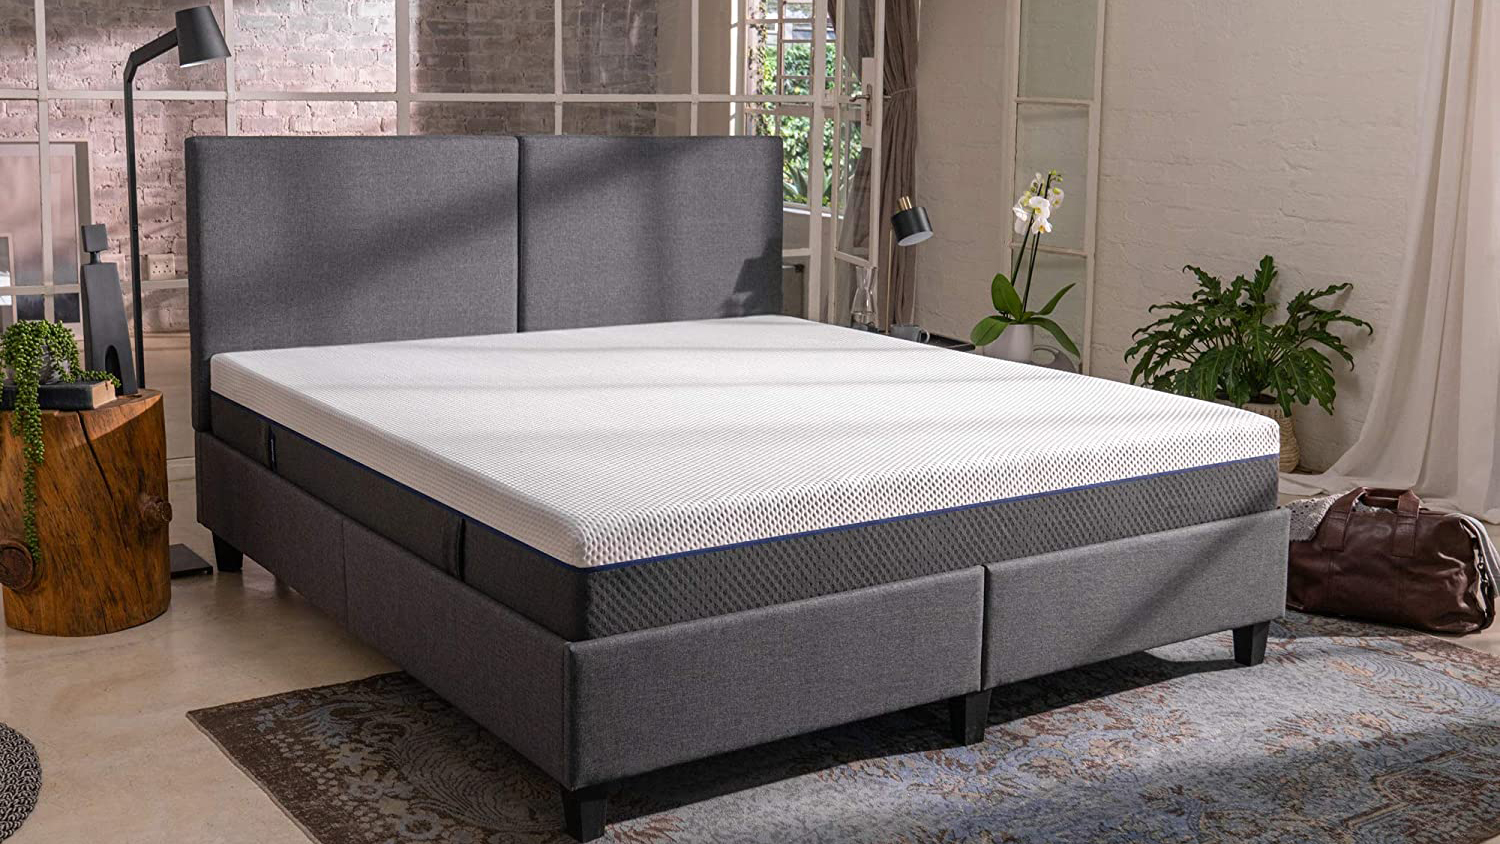 emma mattress price australia